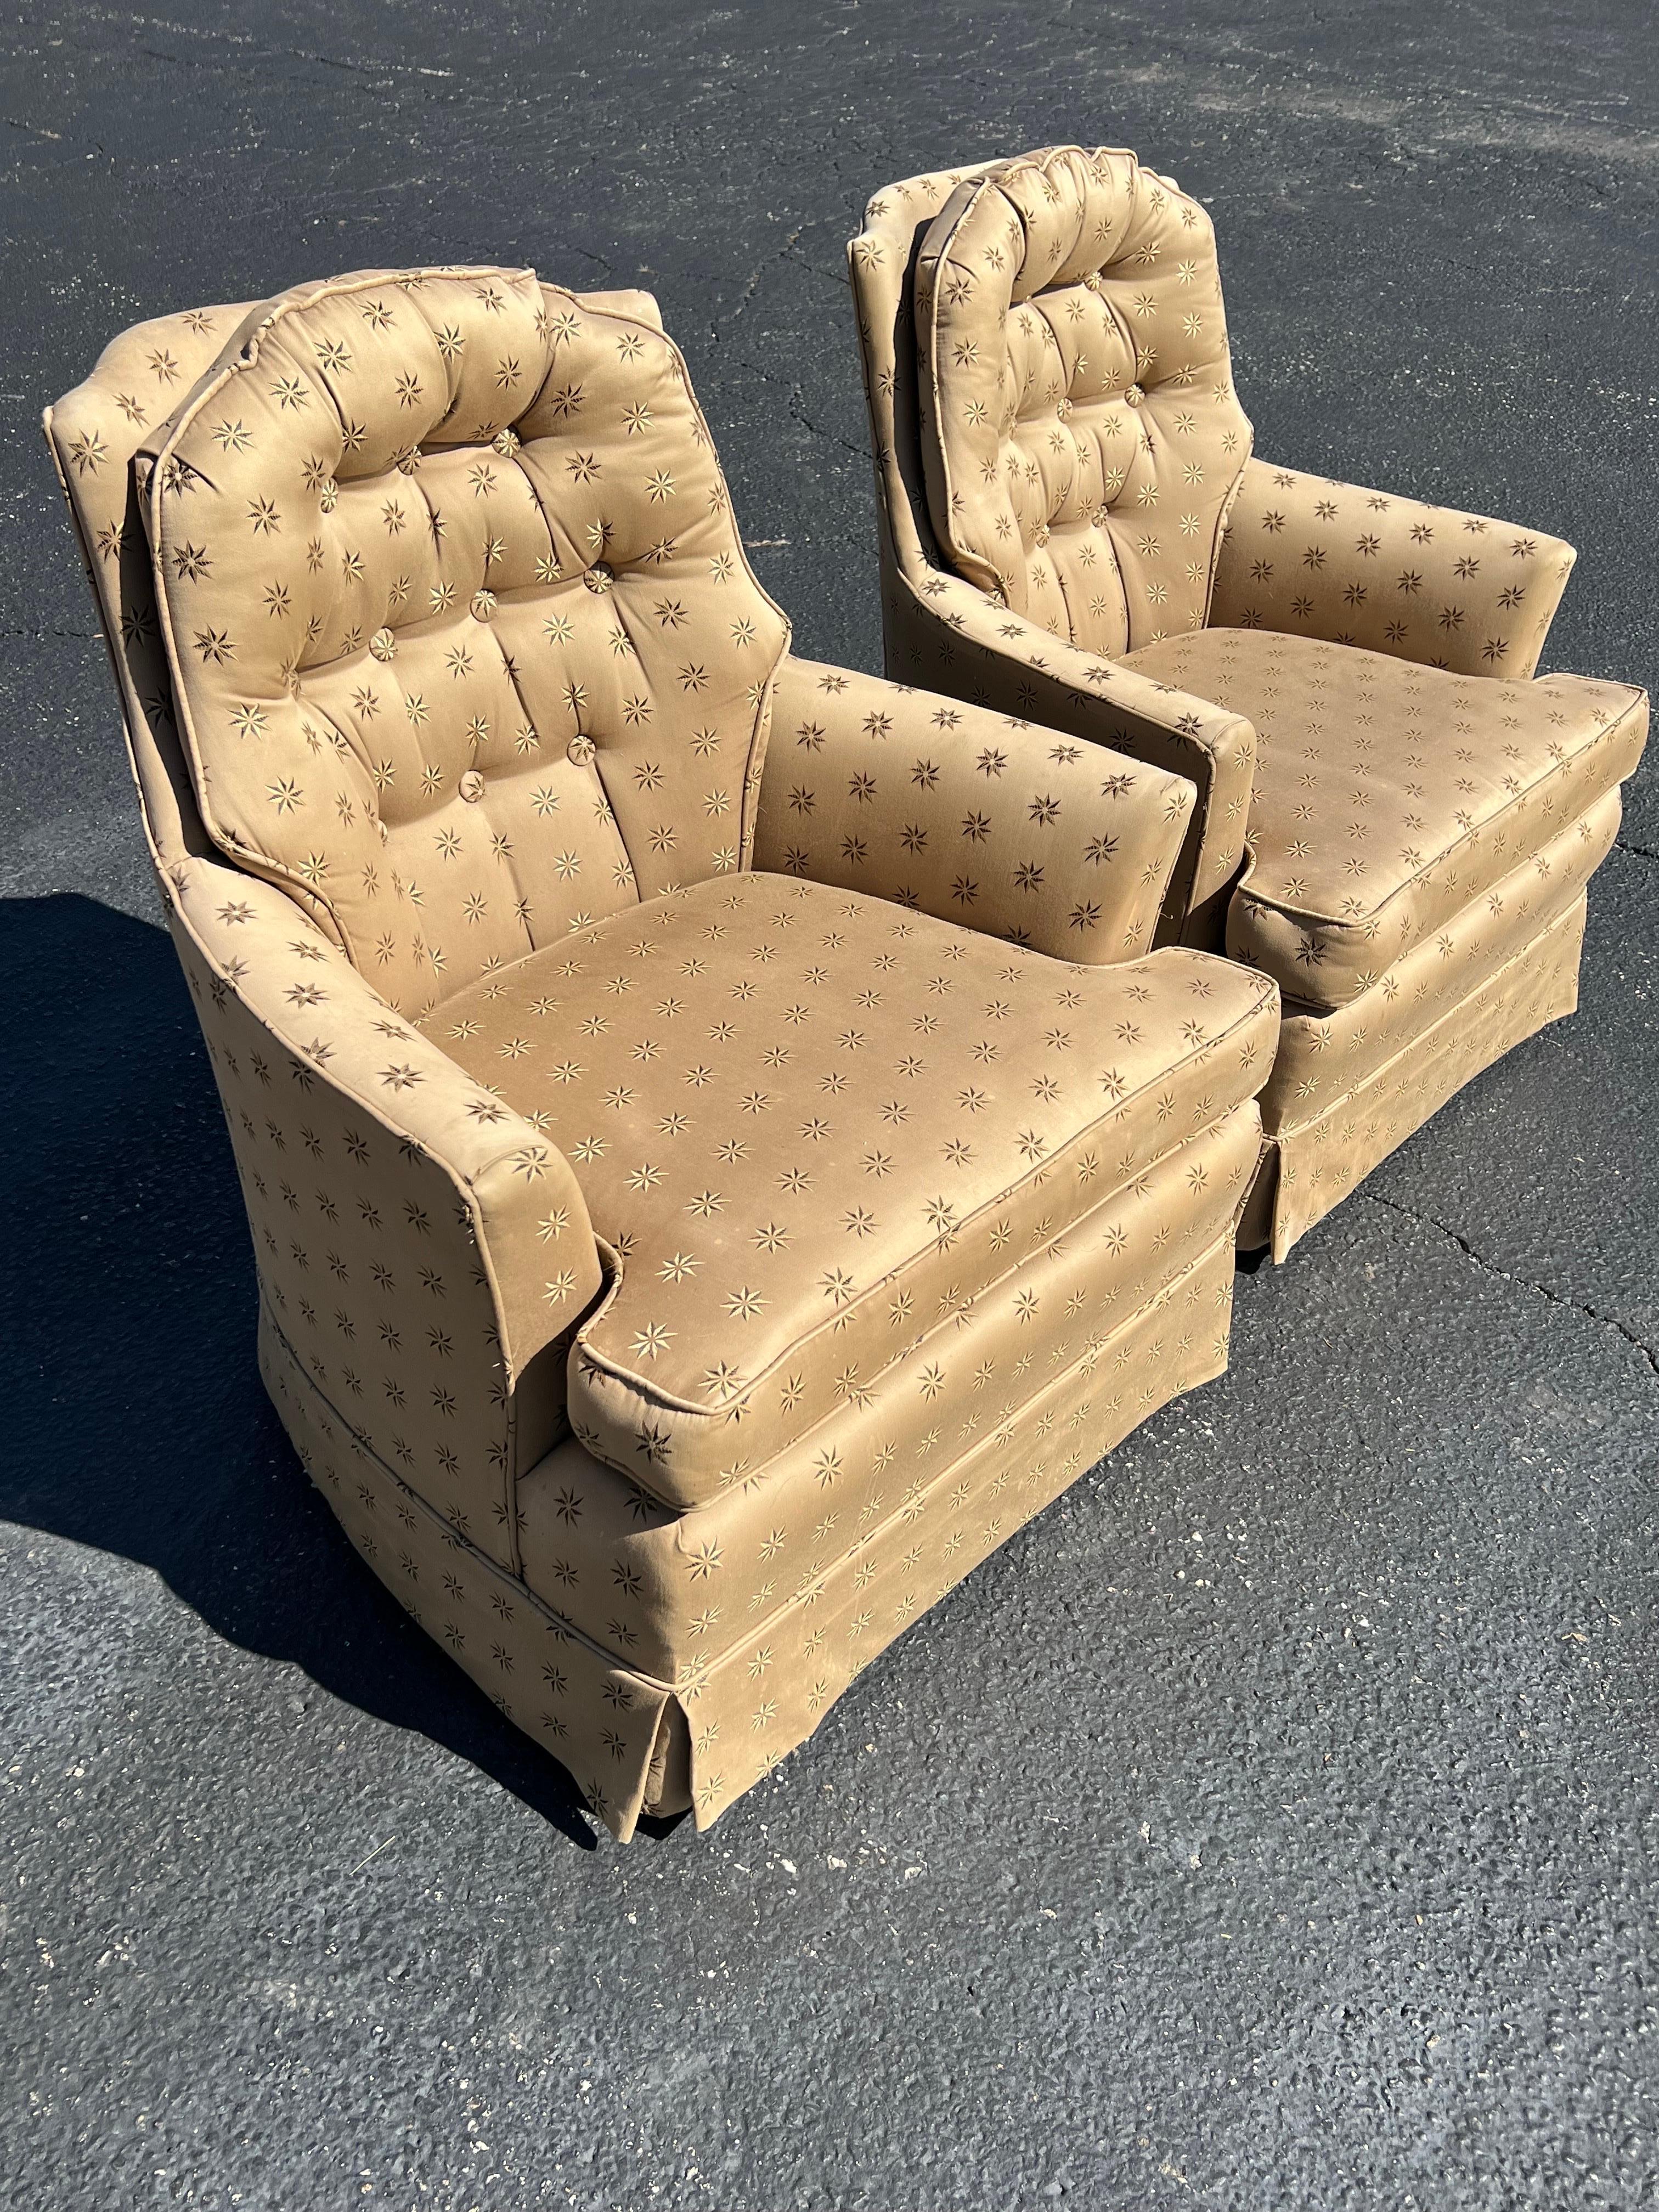 Paar gepolsterte Sessel. Diese Stühle im klassischen Stil sind mit Seide gepolstert und mit Sternen bestickt. Super bequem und attraktiv. Obwohl der Stoff erstaunlich ist, wäre es am besten, ihn wiederherzustellen, da er einige Flecken aufweist. Der